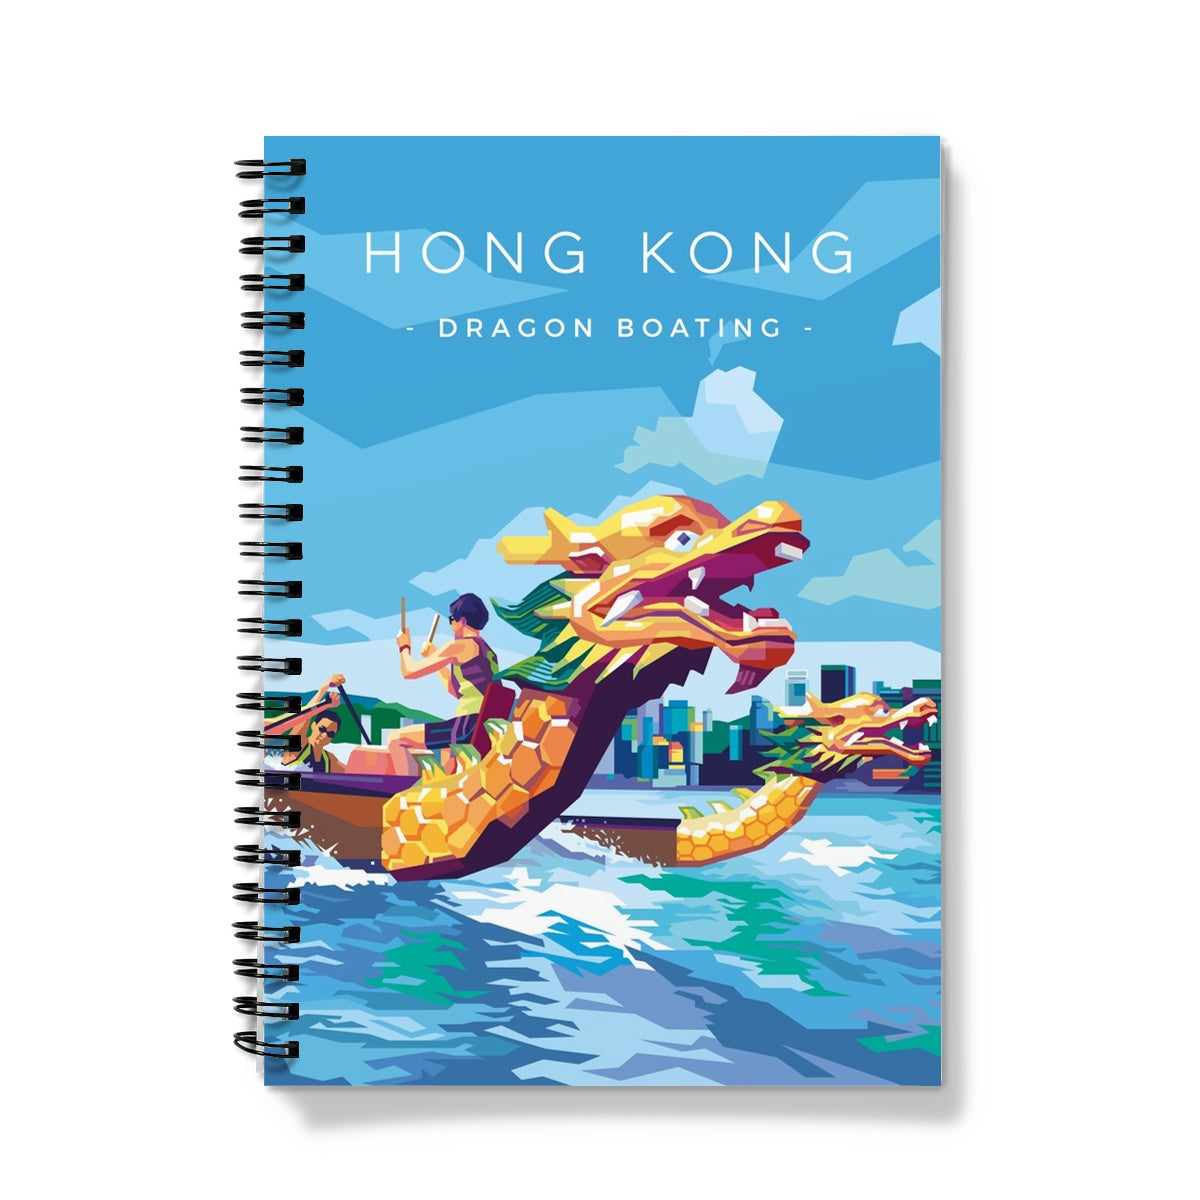 Hong Kong Travel - Dragon Boating Notebook